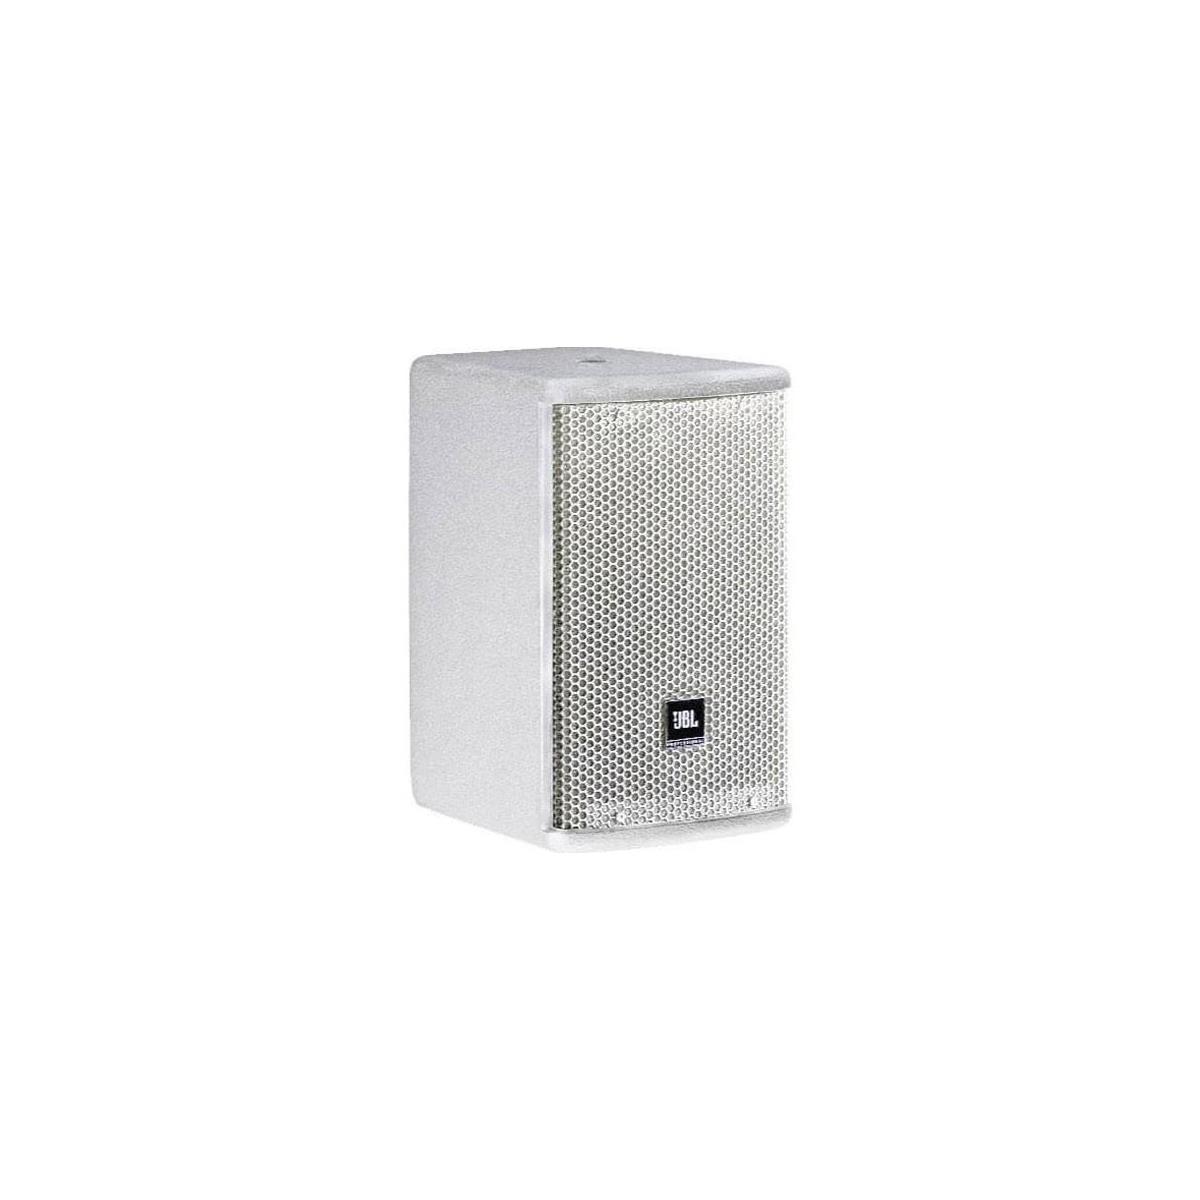 JBL AC599 15" 2-Way Full-Range Passive Loudspeaker System, White -  AC599-WH